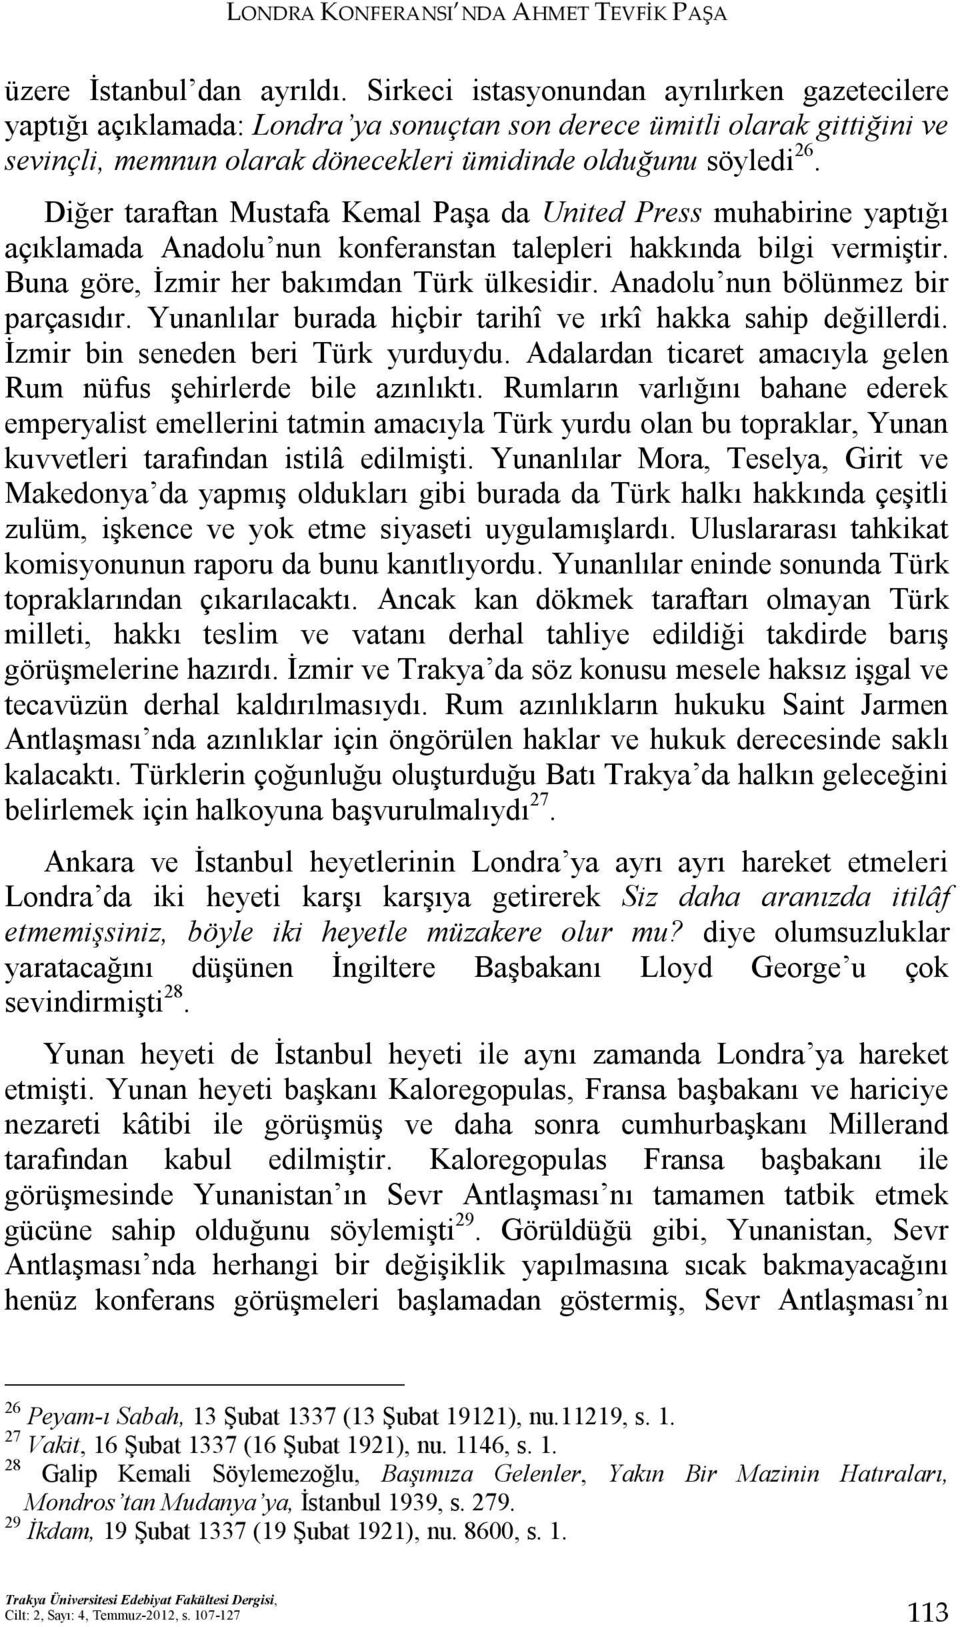 Diğer taraftan Mustafa Kemal Paşa da United Press muhabirine yaptığı açıklamada Anadolu nun konferanstan talepleri hakkında bilgi vermiştir. Buna göre, İzmir her bakımdan Türk ülkesidir.